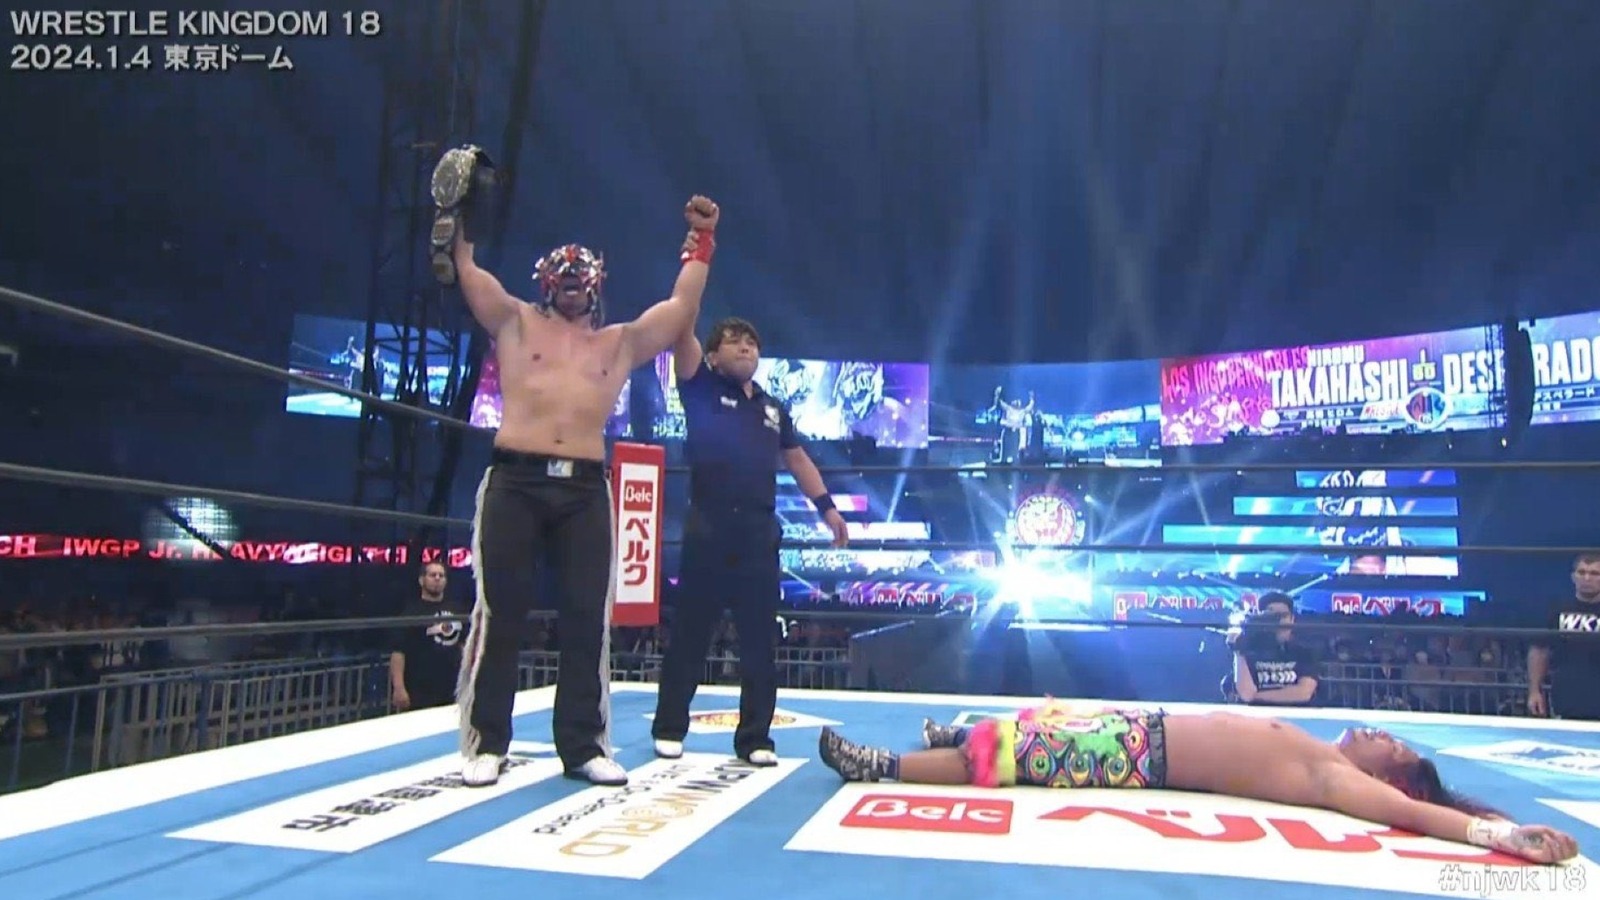 El Desperado gana el campeonato de peso pesado Jr. IWGP en Wrestle Kingdom 18